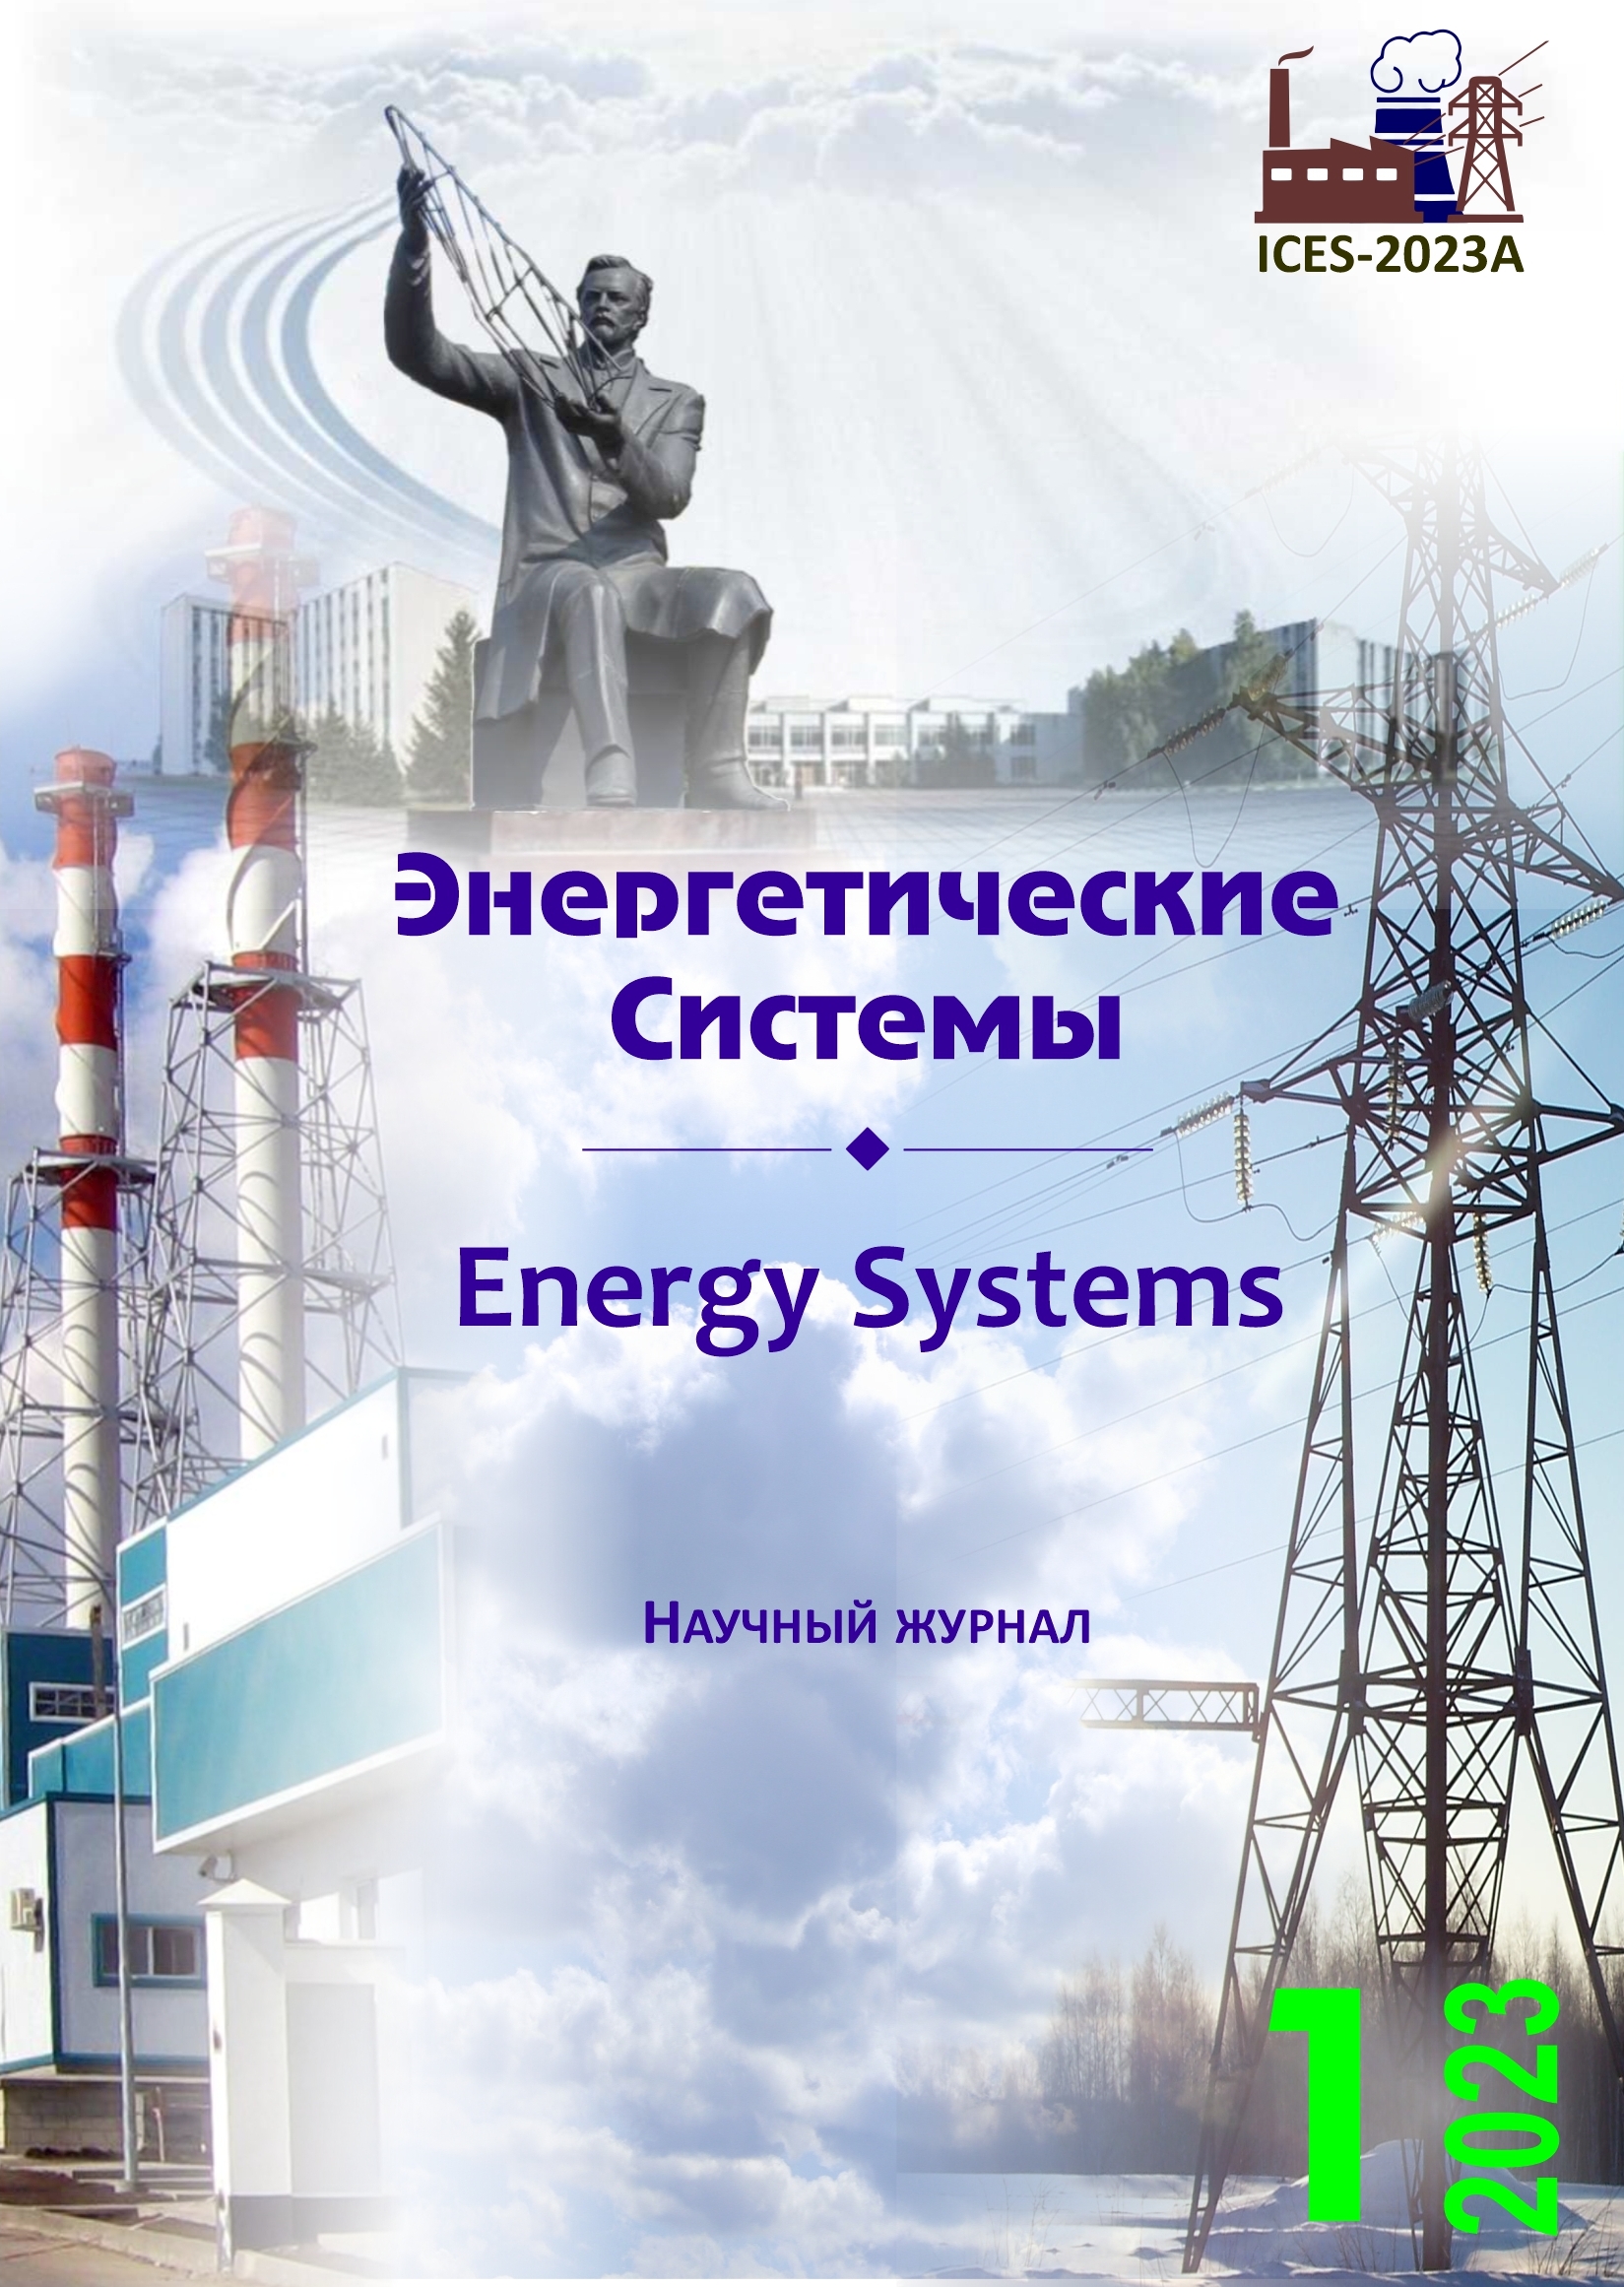 					Показать Том 8 № 1 (2023): VII международная научно-техническая конференция «Энергетические системы» (ICES-2023)
				